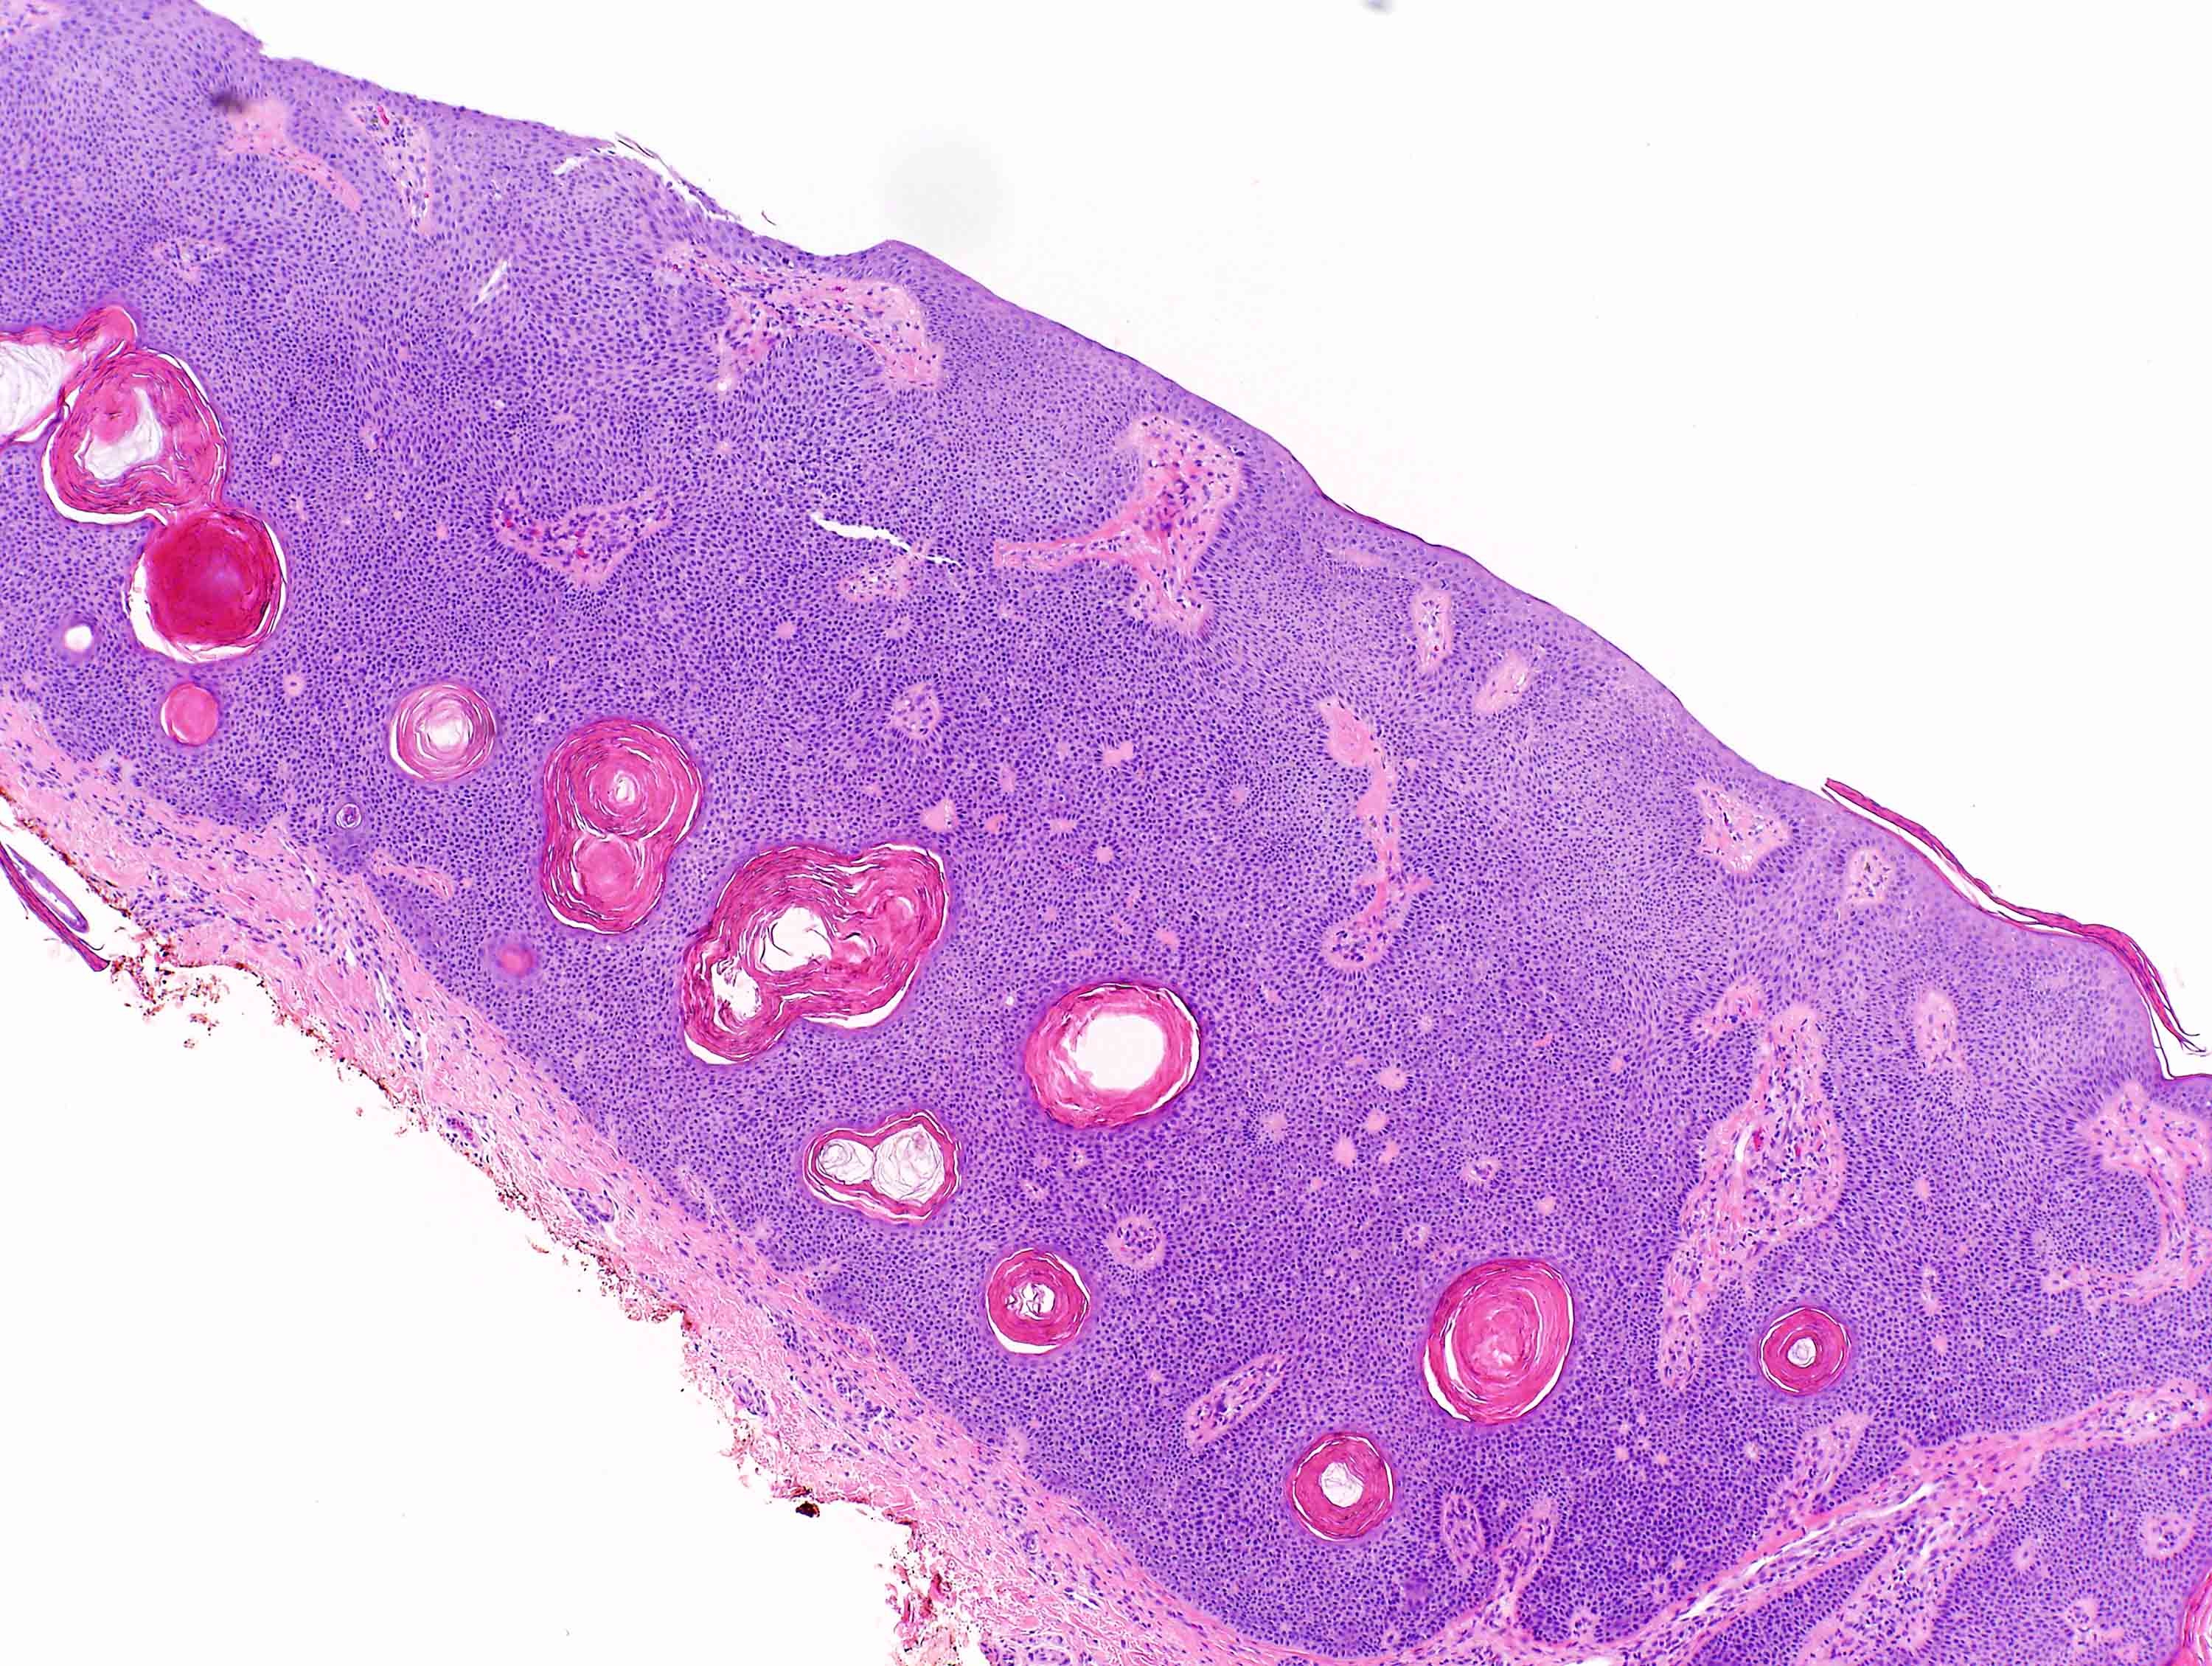 keratotic papilloma pathology outlines